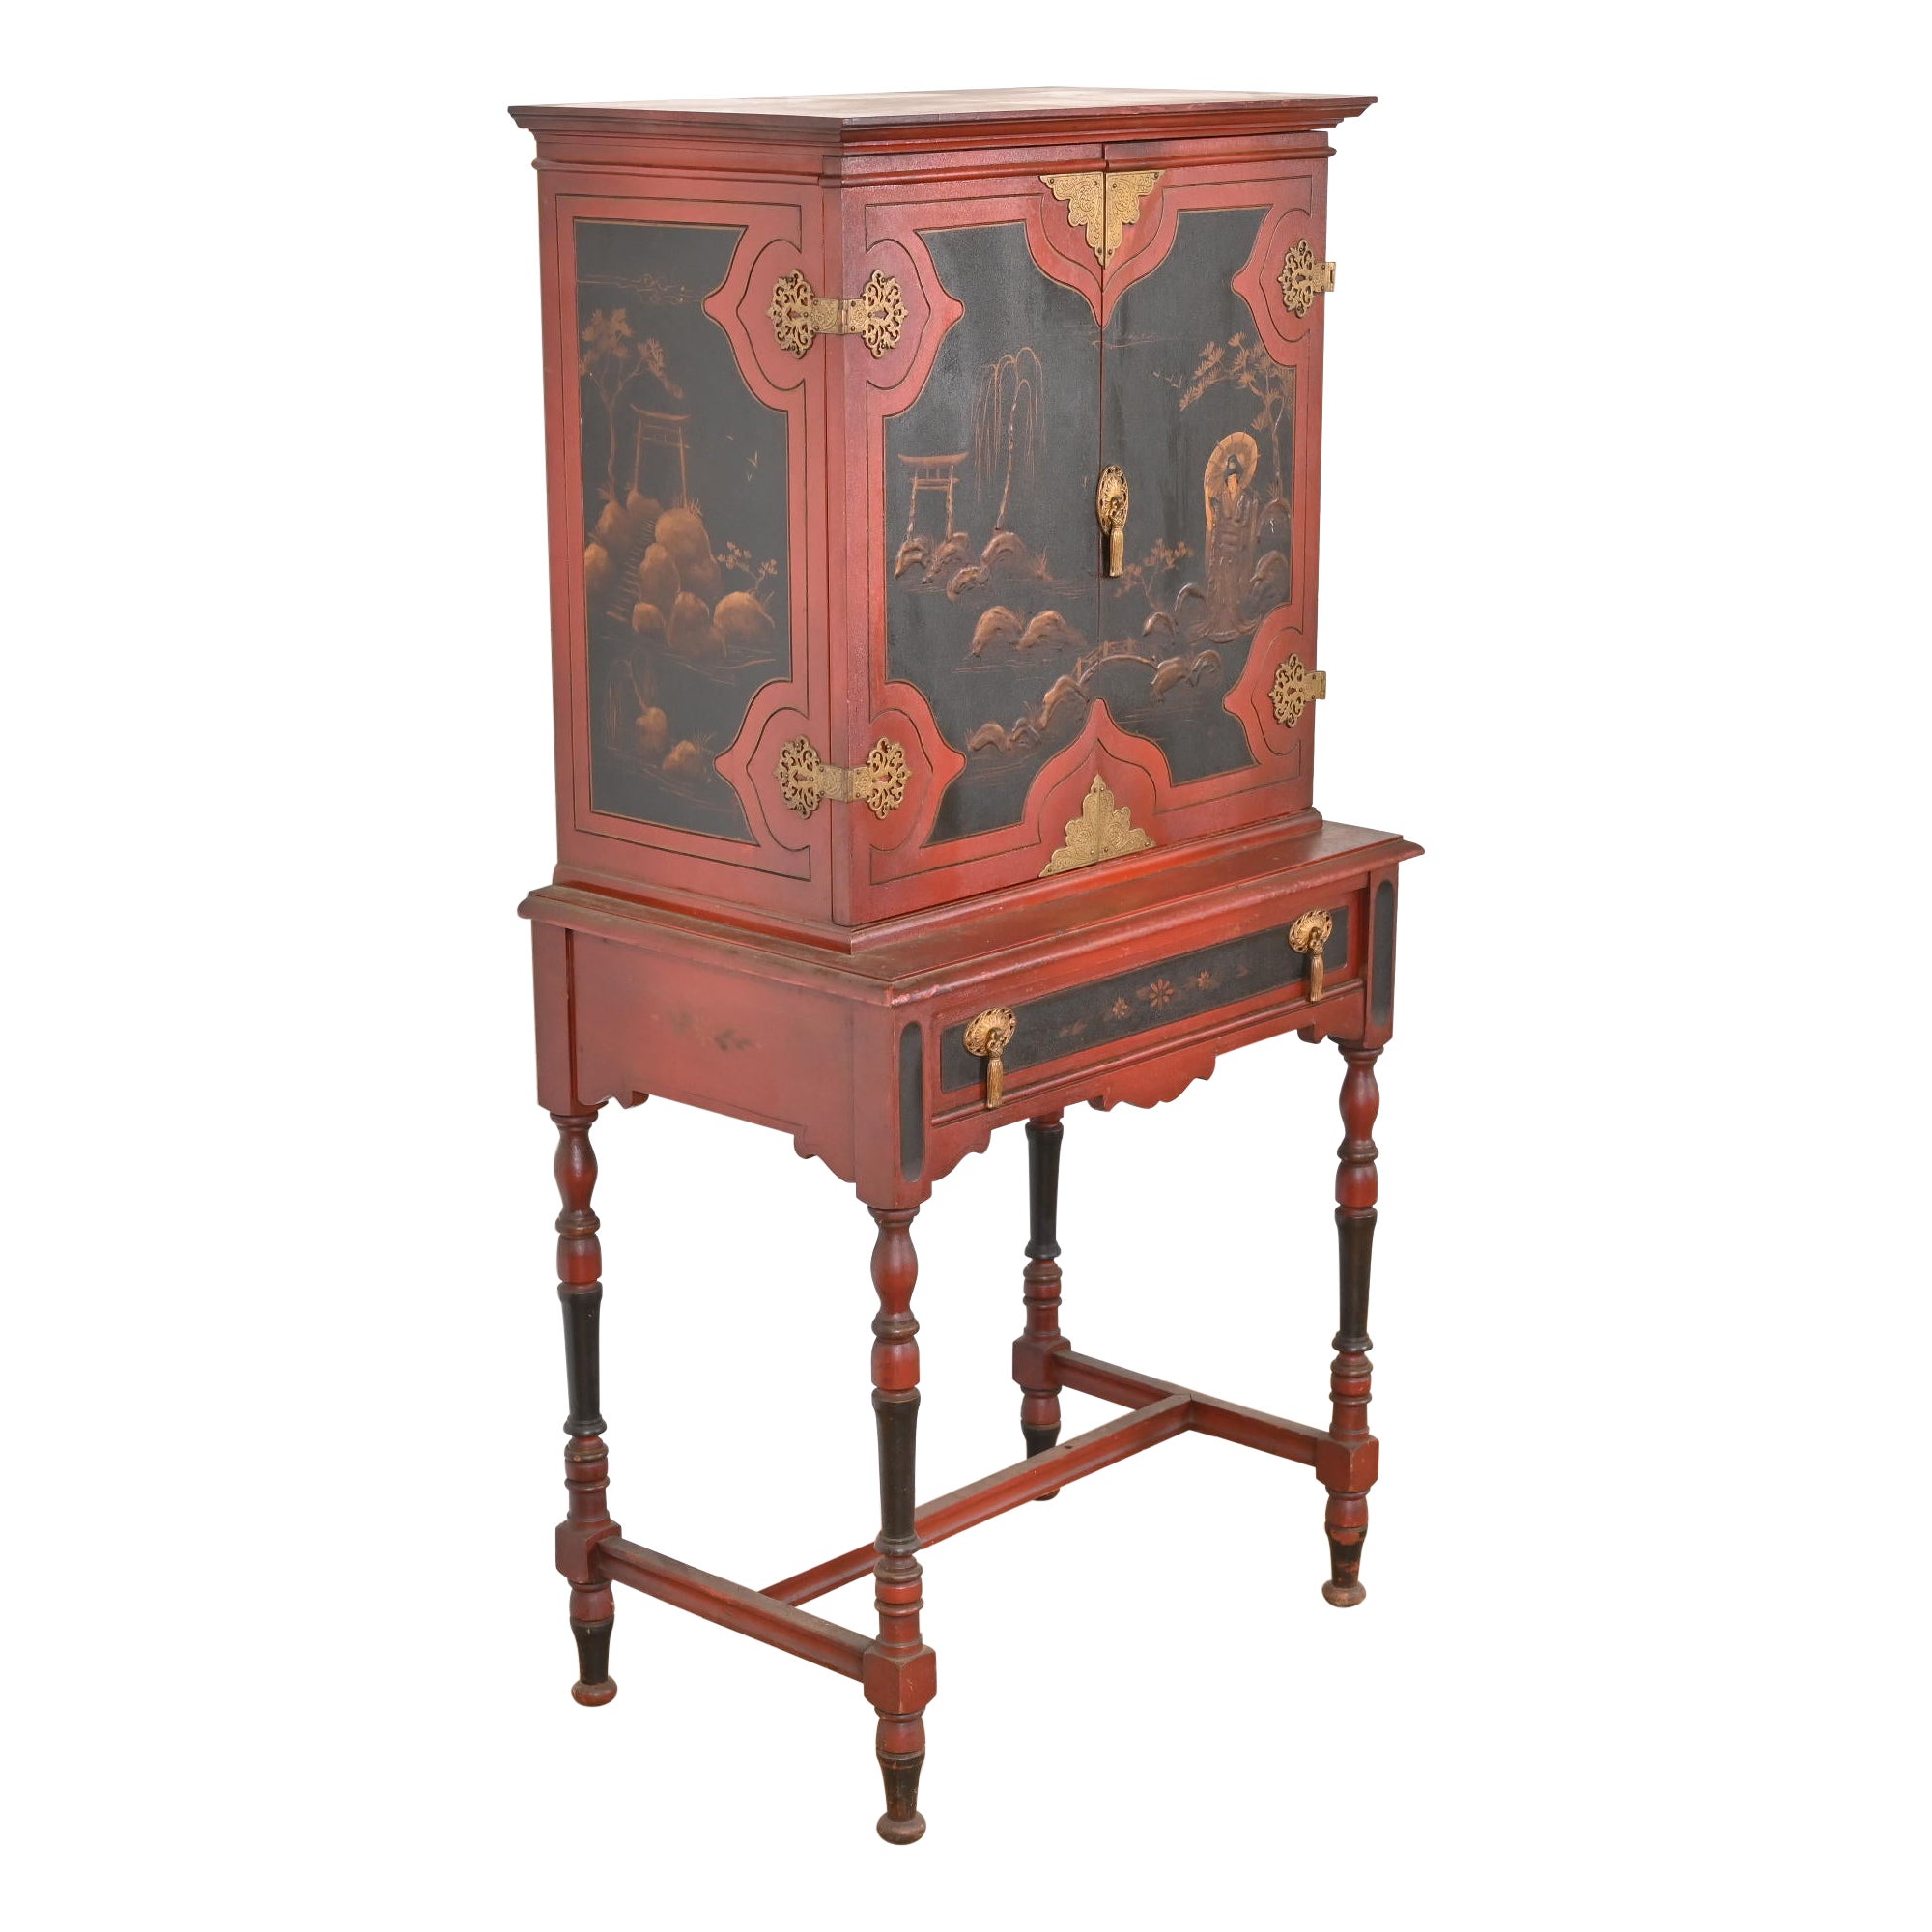 Bibliothèque ou meuble de bar ancien, laqué rouge, peint à la main, de style Jacobean Chinoiserie